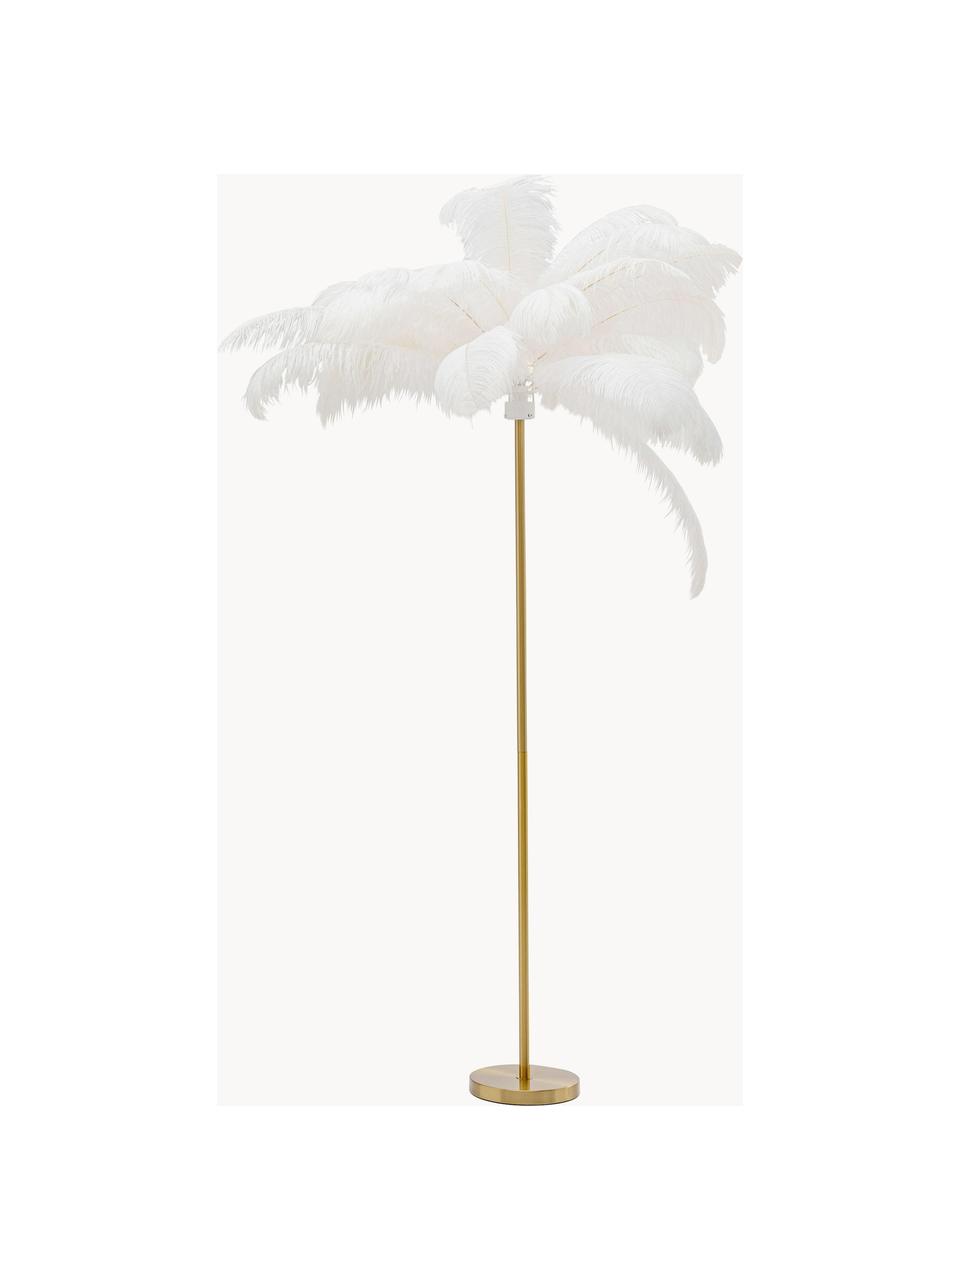 Lampadaire Feather Palm, Doré, blanc, haut. 165 cm